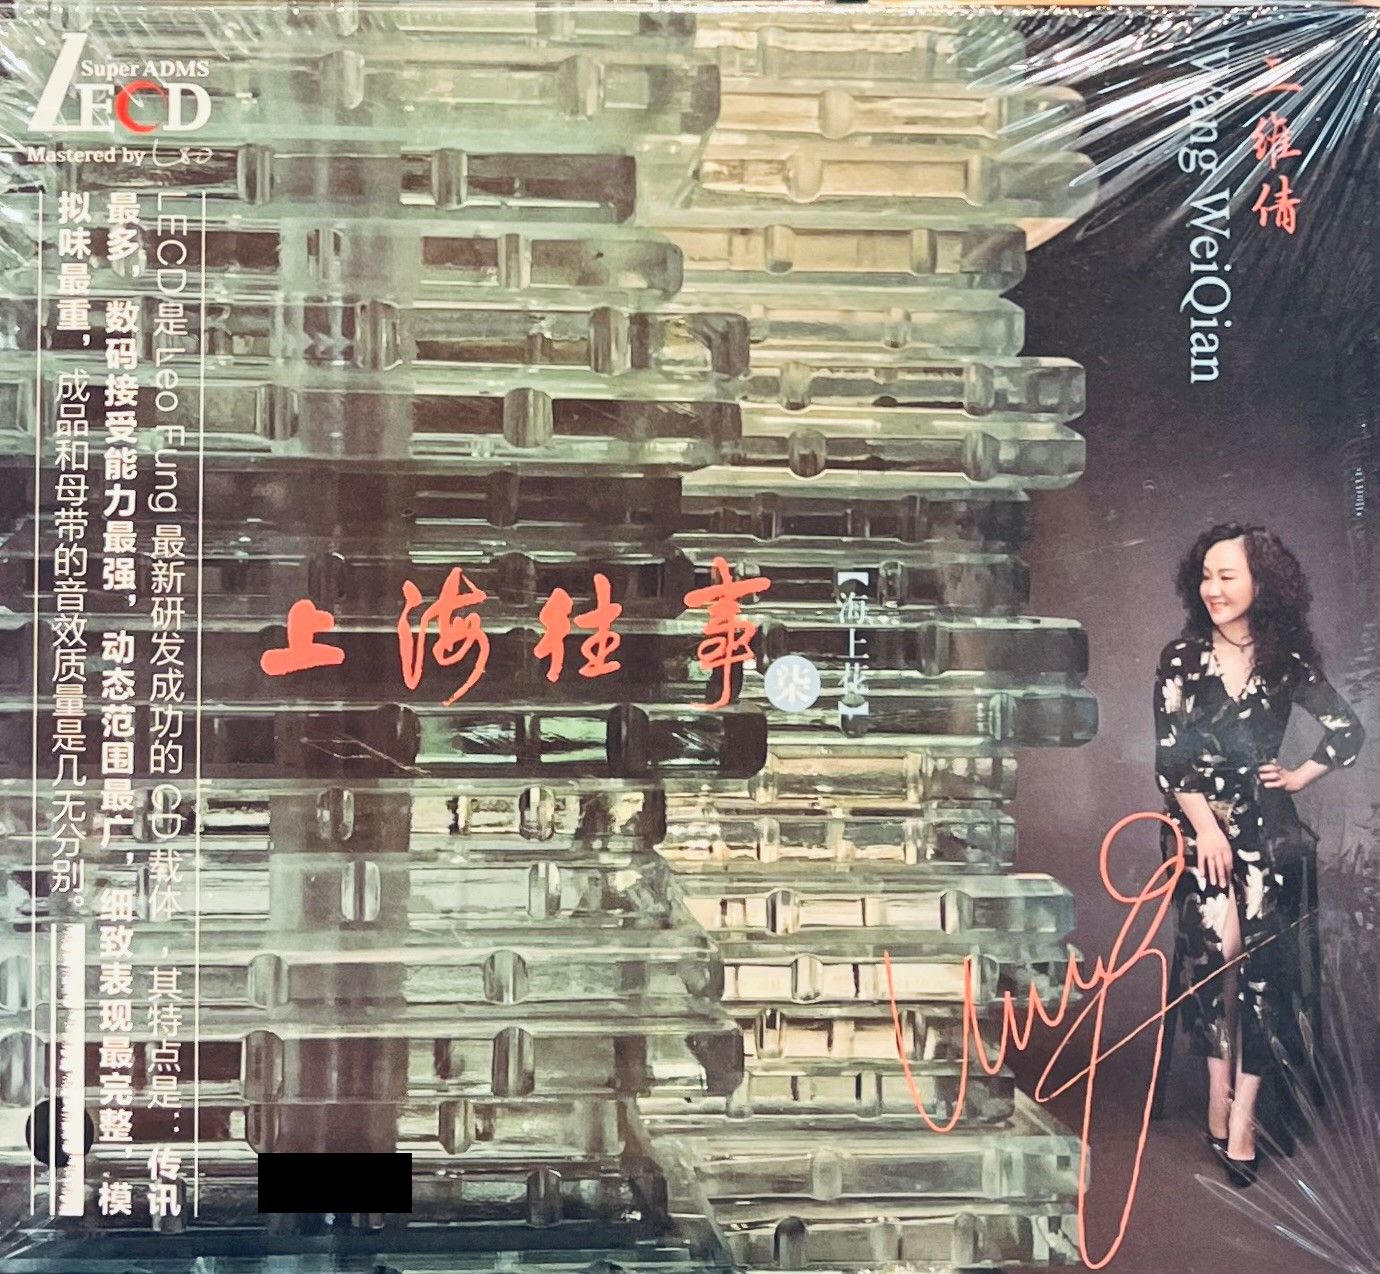 WANG WEI QIAN - 王维倩 海上花 7 MEMORIES OF SHANGHAI 上海往事 (LECD) CD